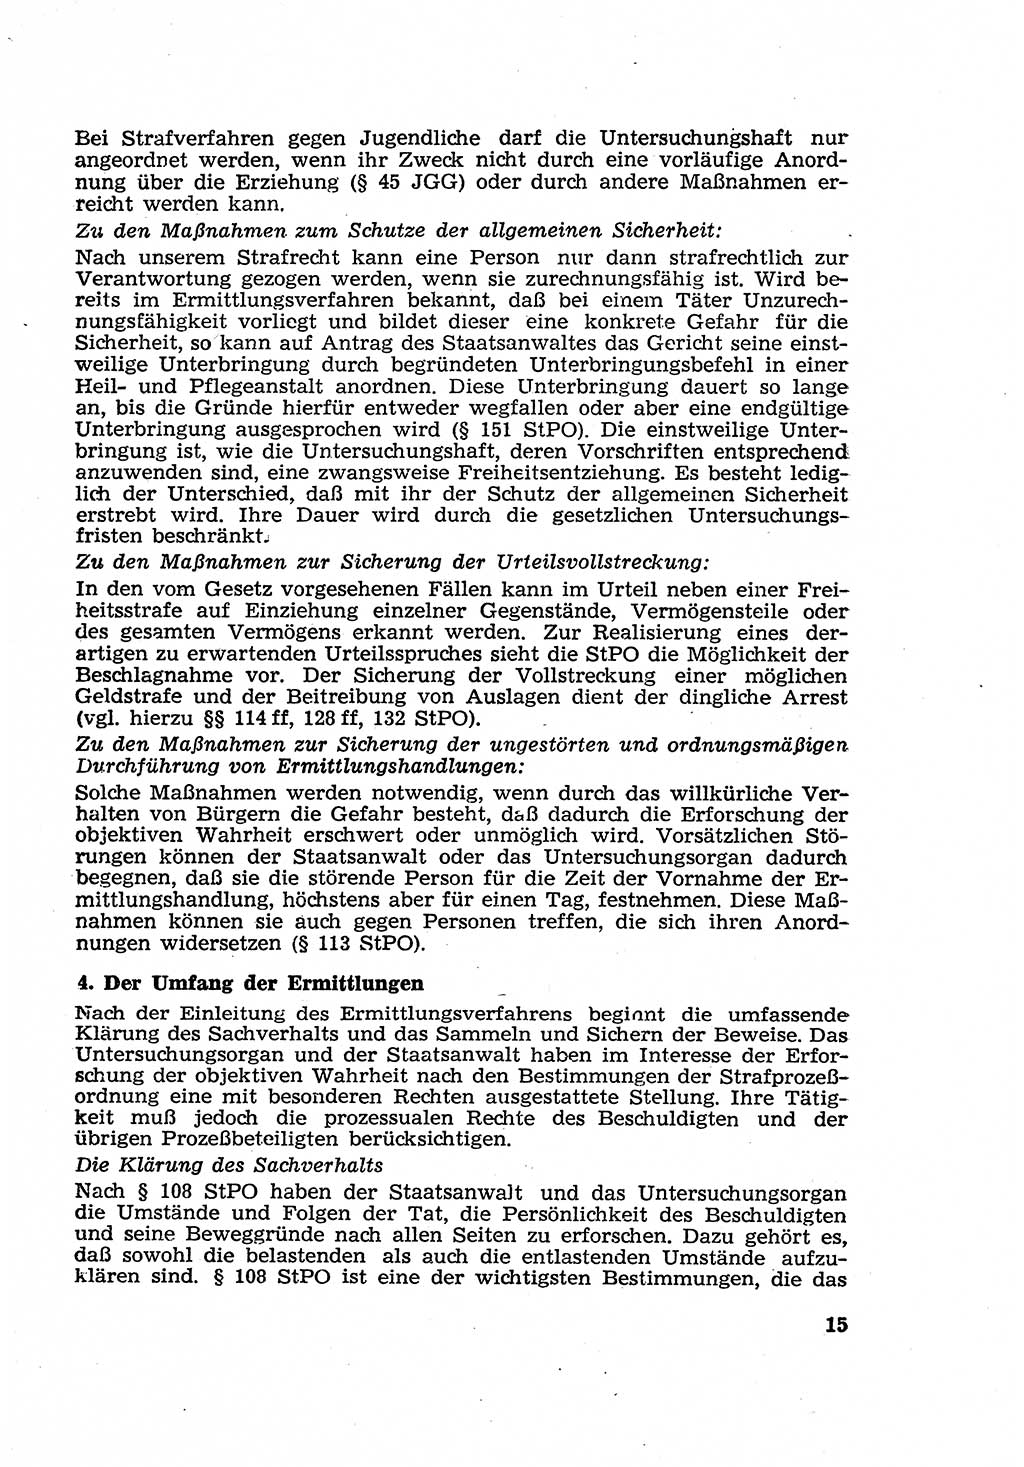 Strafverfahren in der Deutschen Demokratischen Republik (DDR) und seine demokratischen Prinzipien 1956, Seite 15 (Str.-Verf. DDR 1956, S. 15)